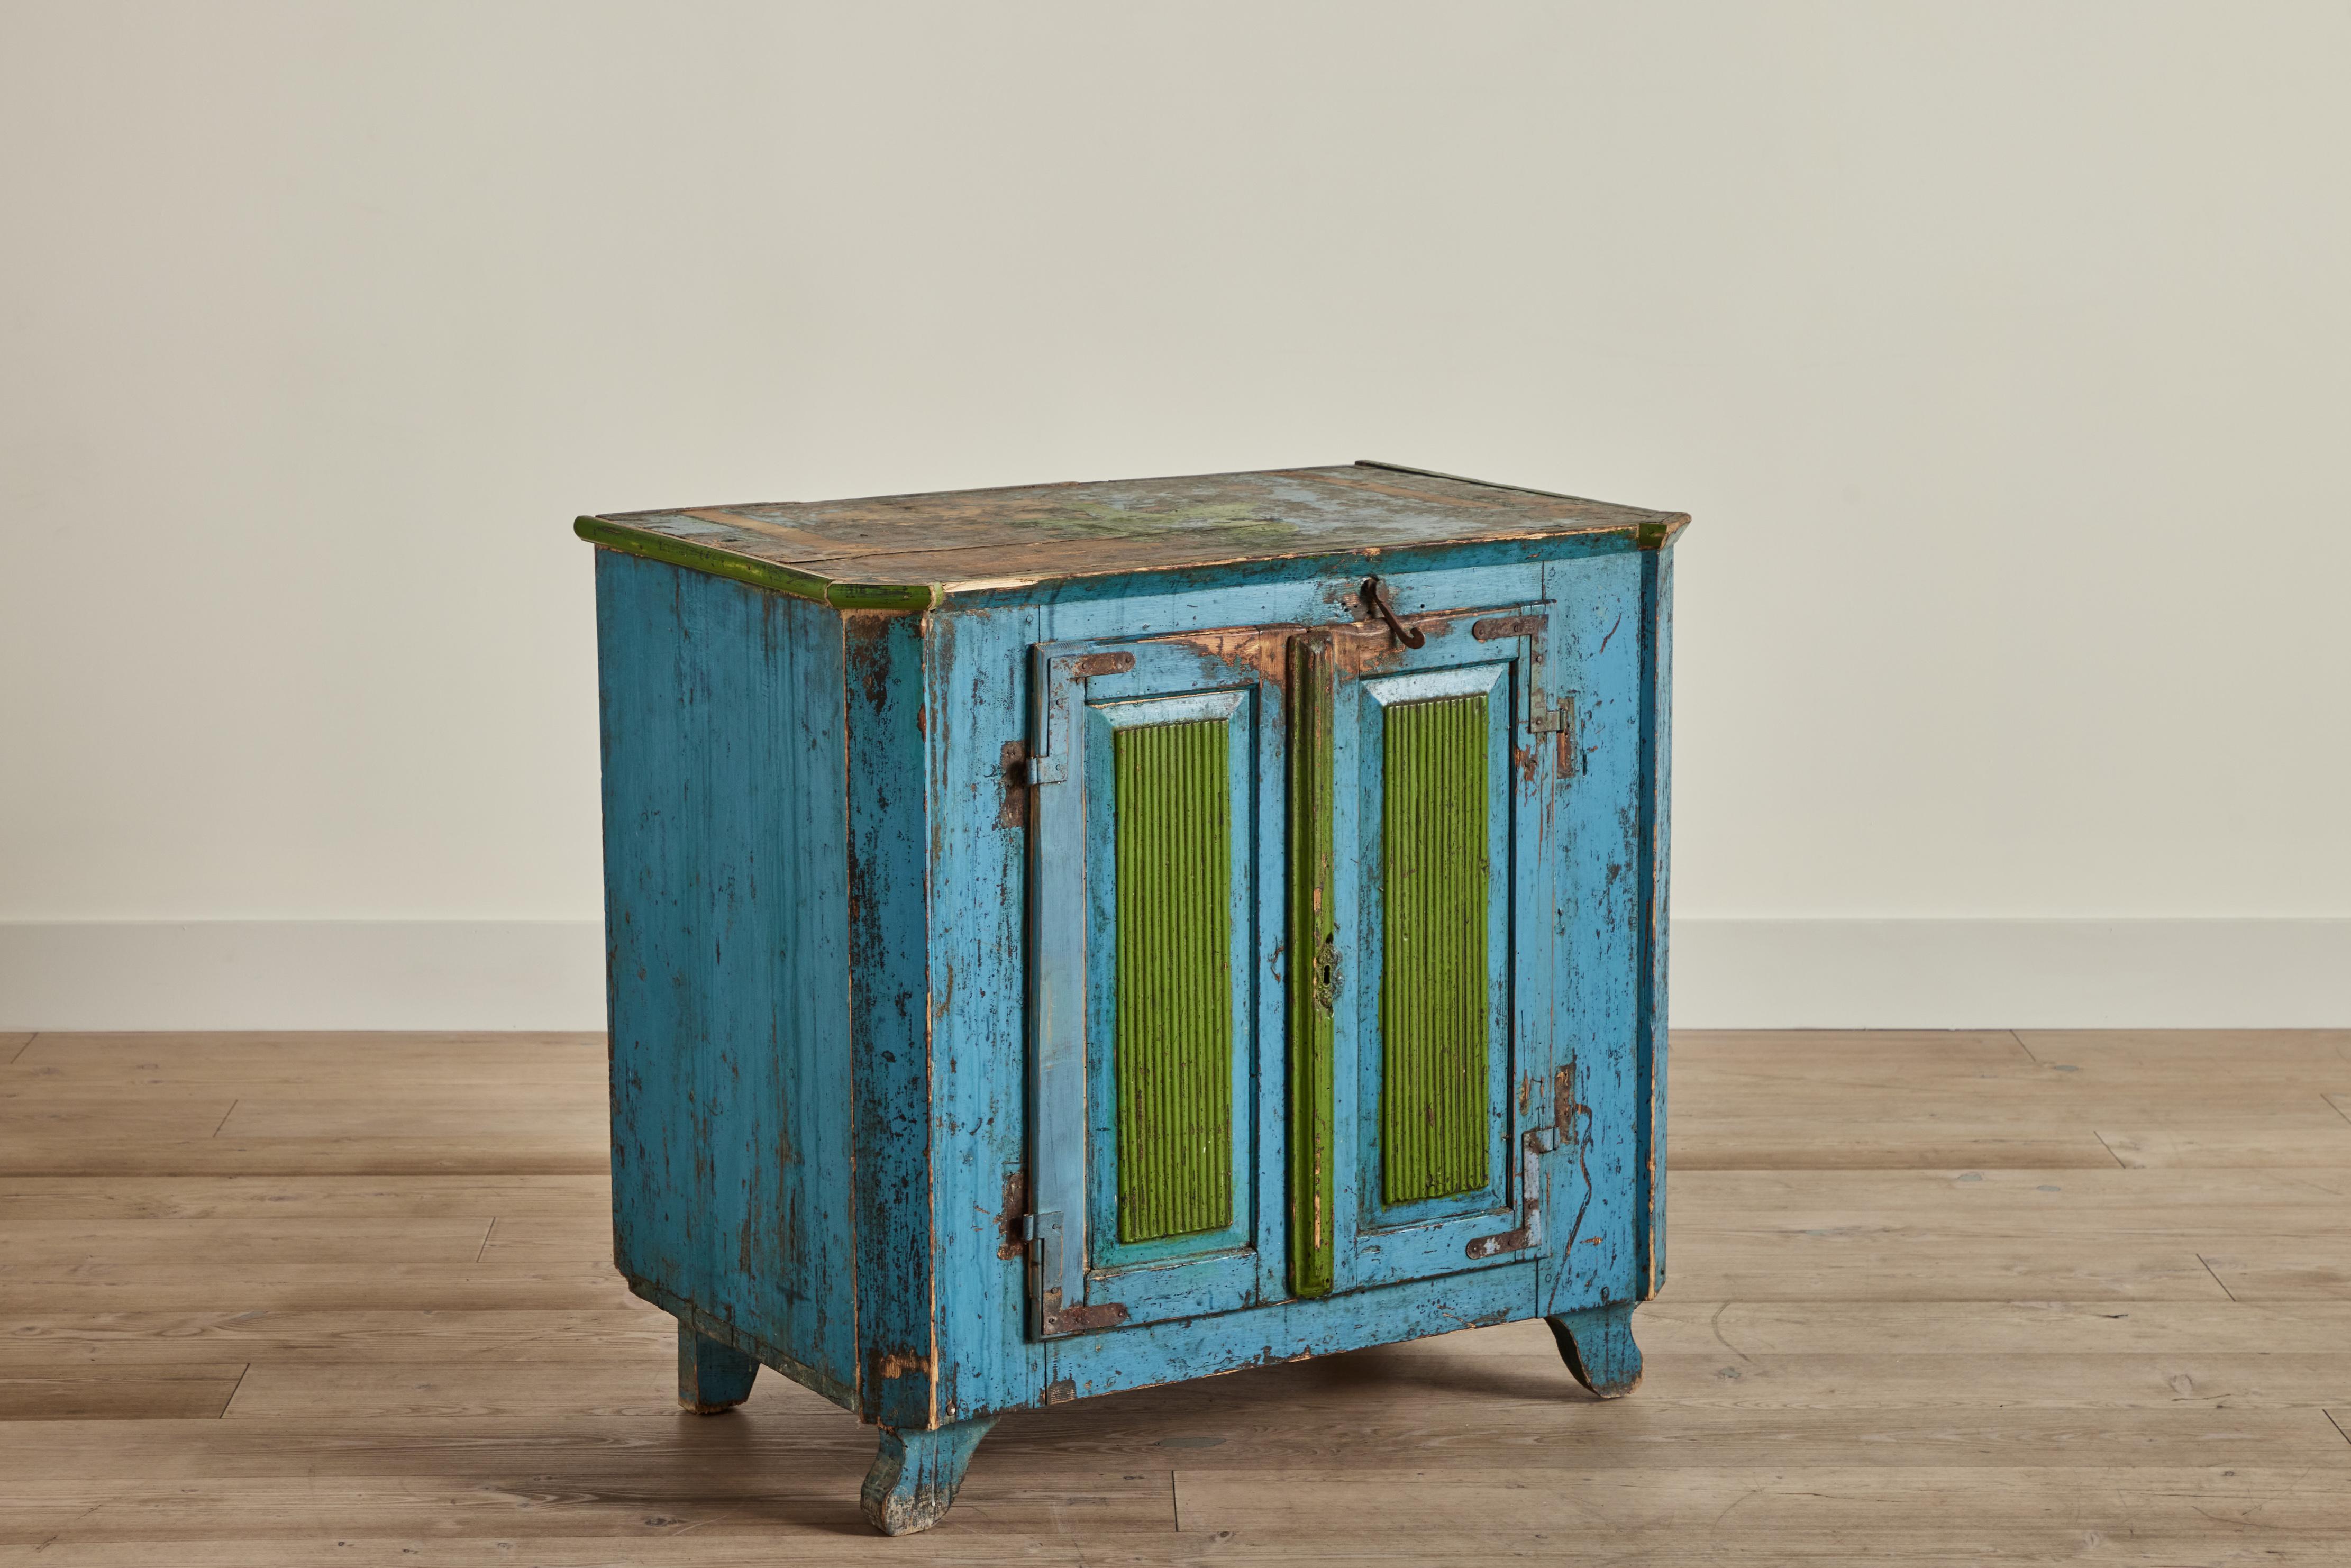 Armoire à confiture de la fin du XIXe siècle, peinte en bleu et vert, provenant de Hongrie. Le bois et la peinture sont très usés, ce qui correspond à l'âge et à l'utilisation. 